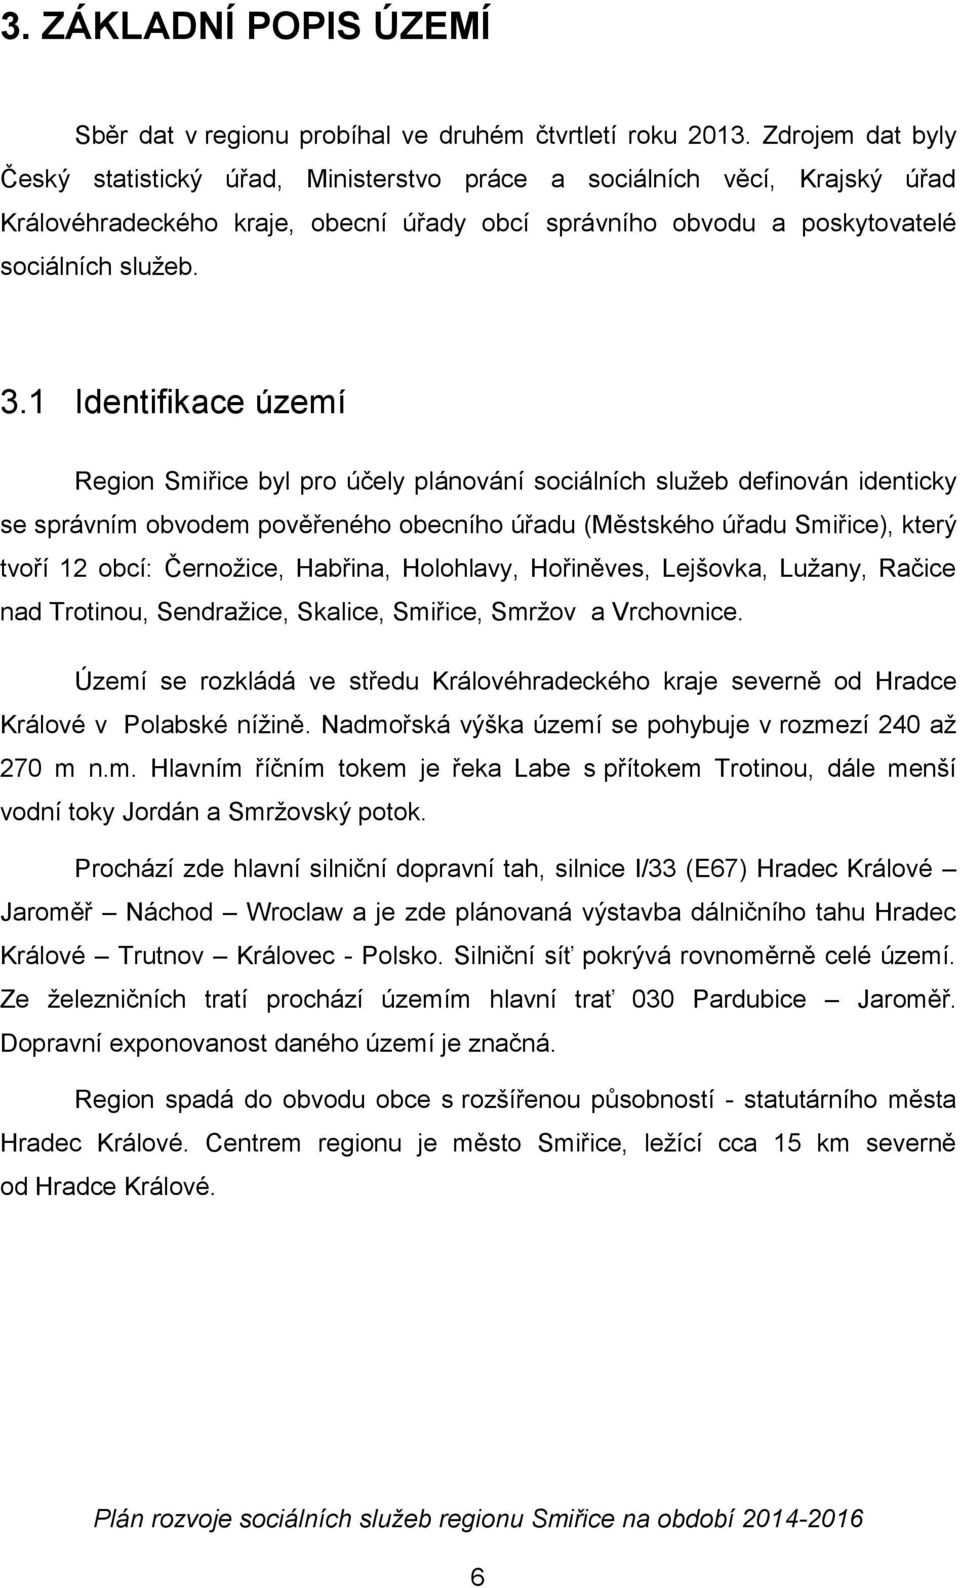 1 Identifikace území Region Smiřice byl pro účely plánování sociálních služeb definován identicky se správním obvodem pověřeného obecního úřadu (Městského úřadu Smiřice), který tvoří 12 obcí: